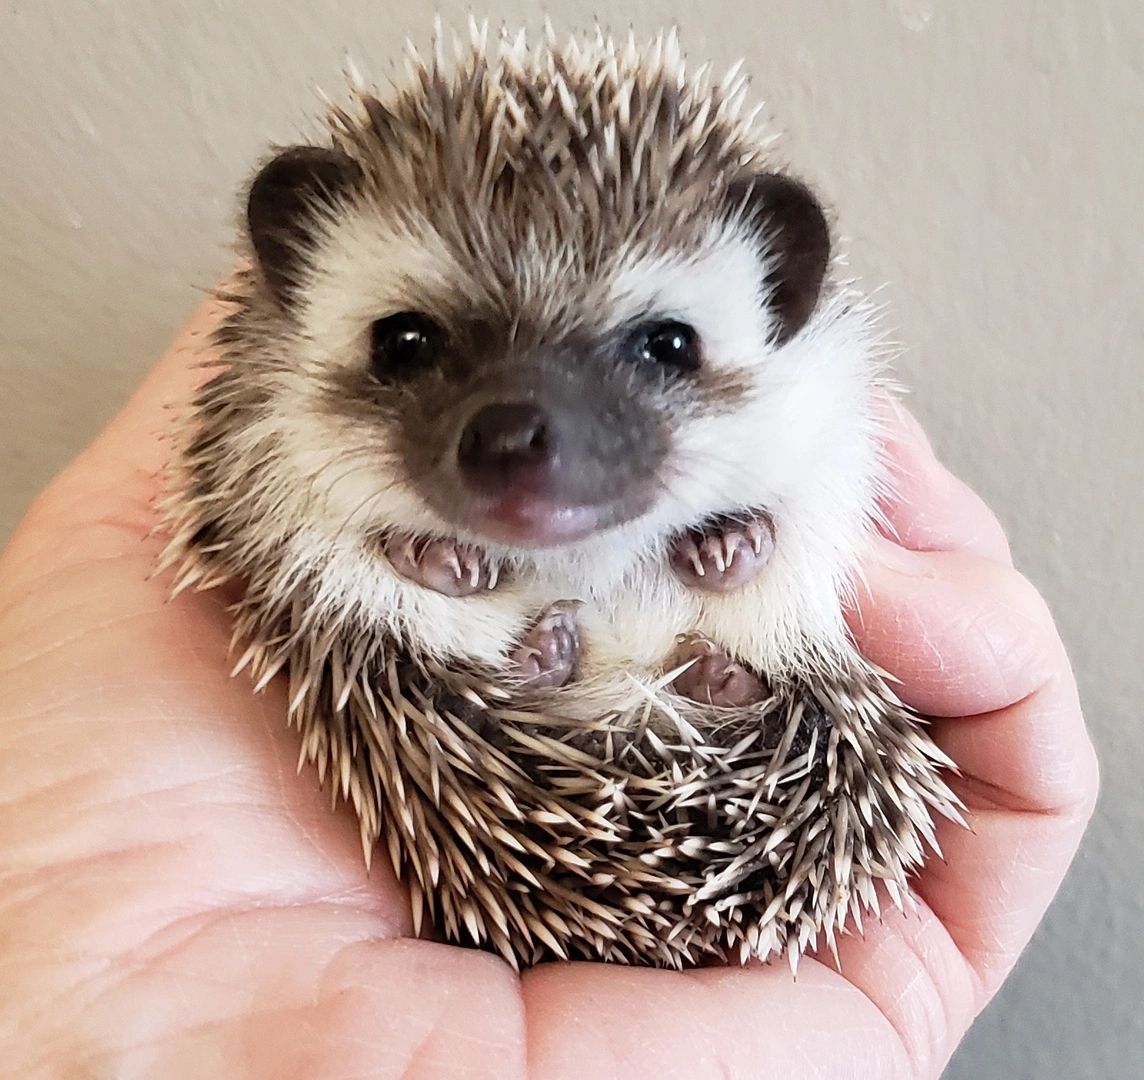 full grown pet hedgehog